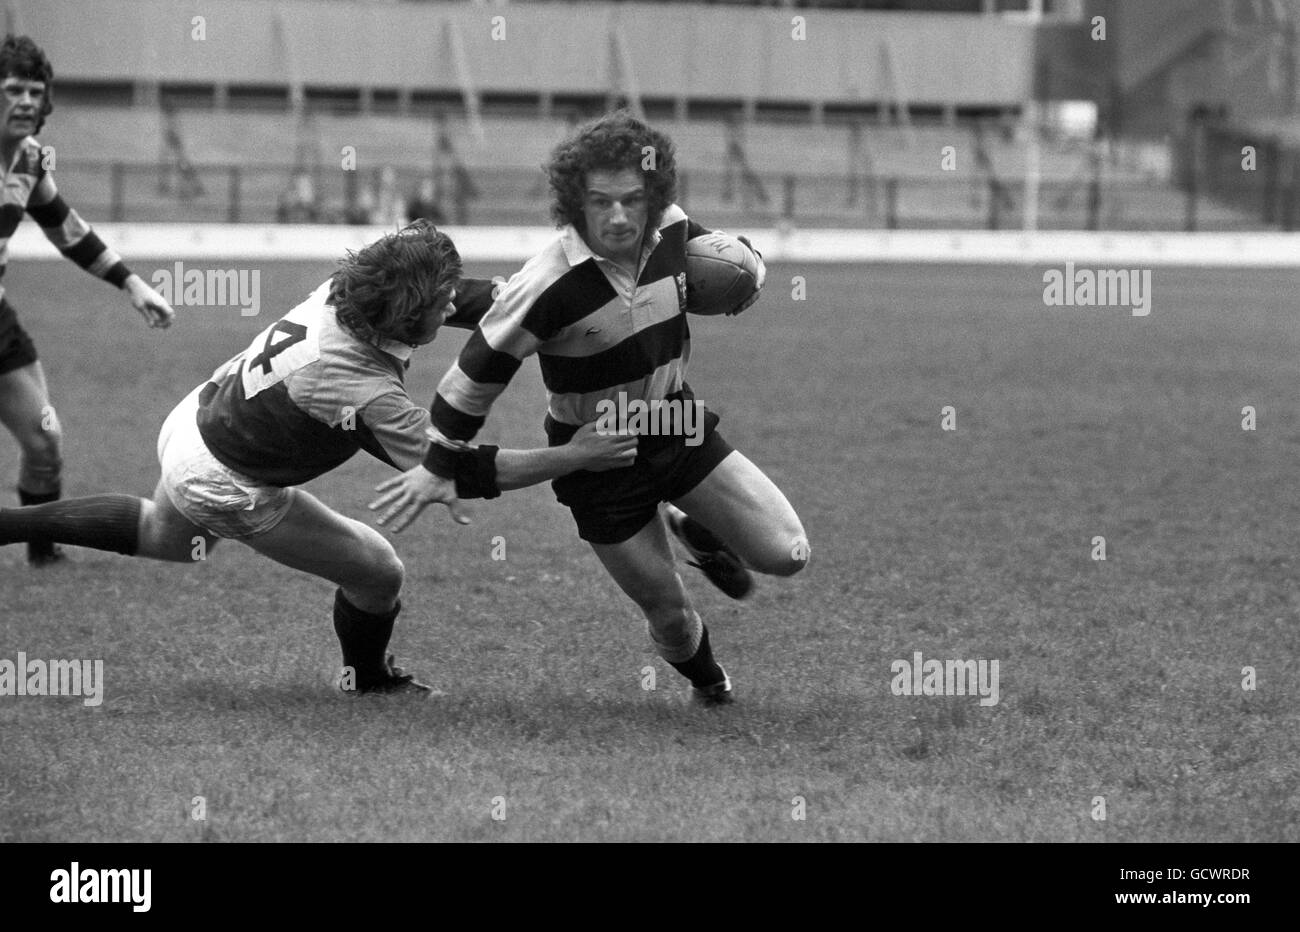 Rugby Union - Harlequins / Cardiff - Twickenham. Harlekine Flügelspieler C Lambert versucht, einen Bruch durch seine Gegenzahl D Thomas zu vereiteln Stockfoto